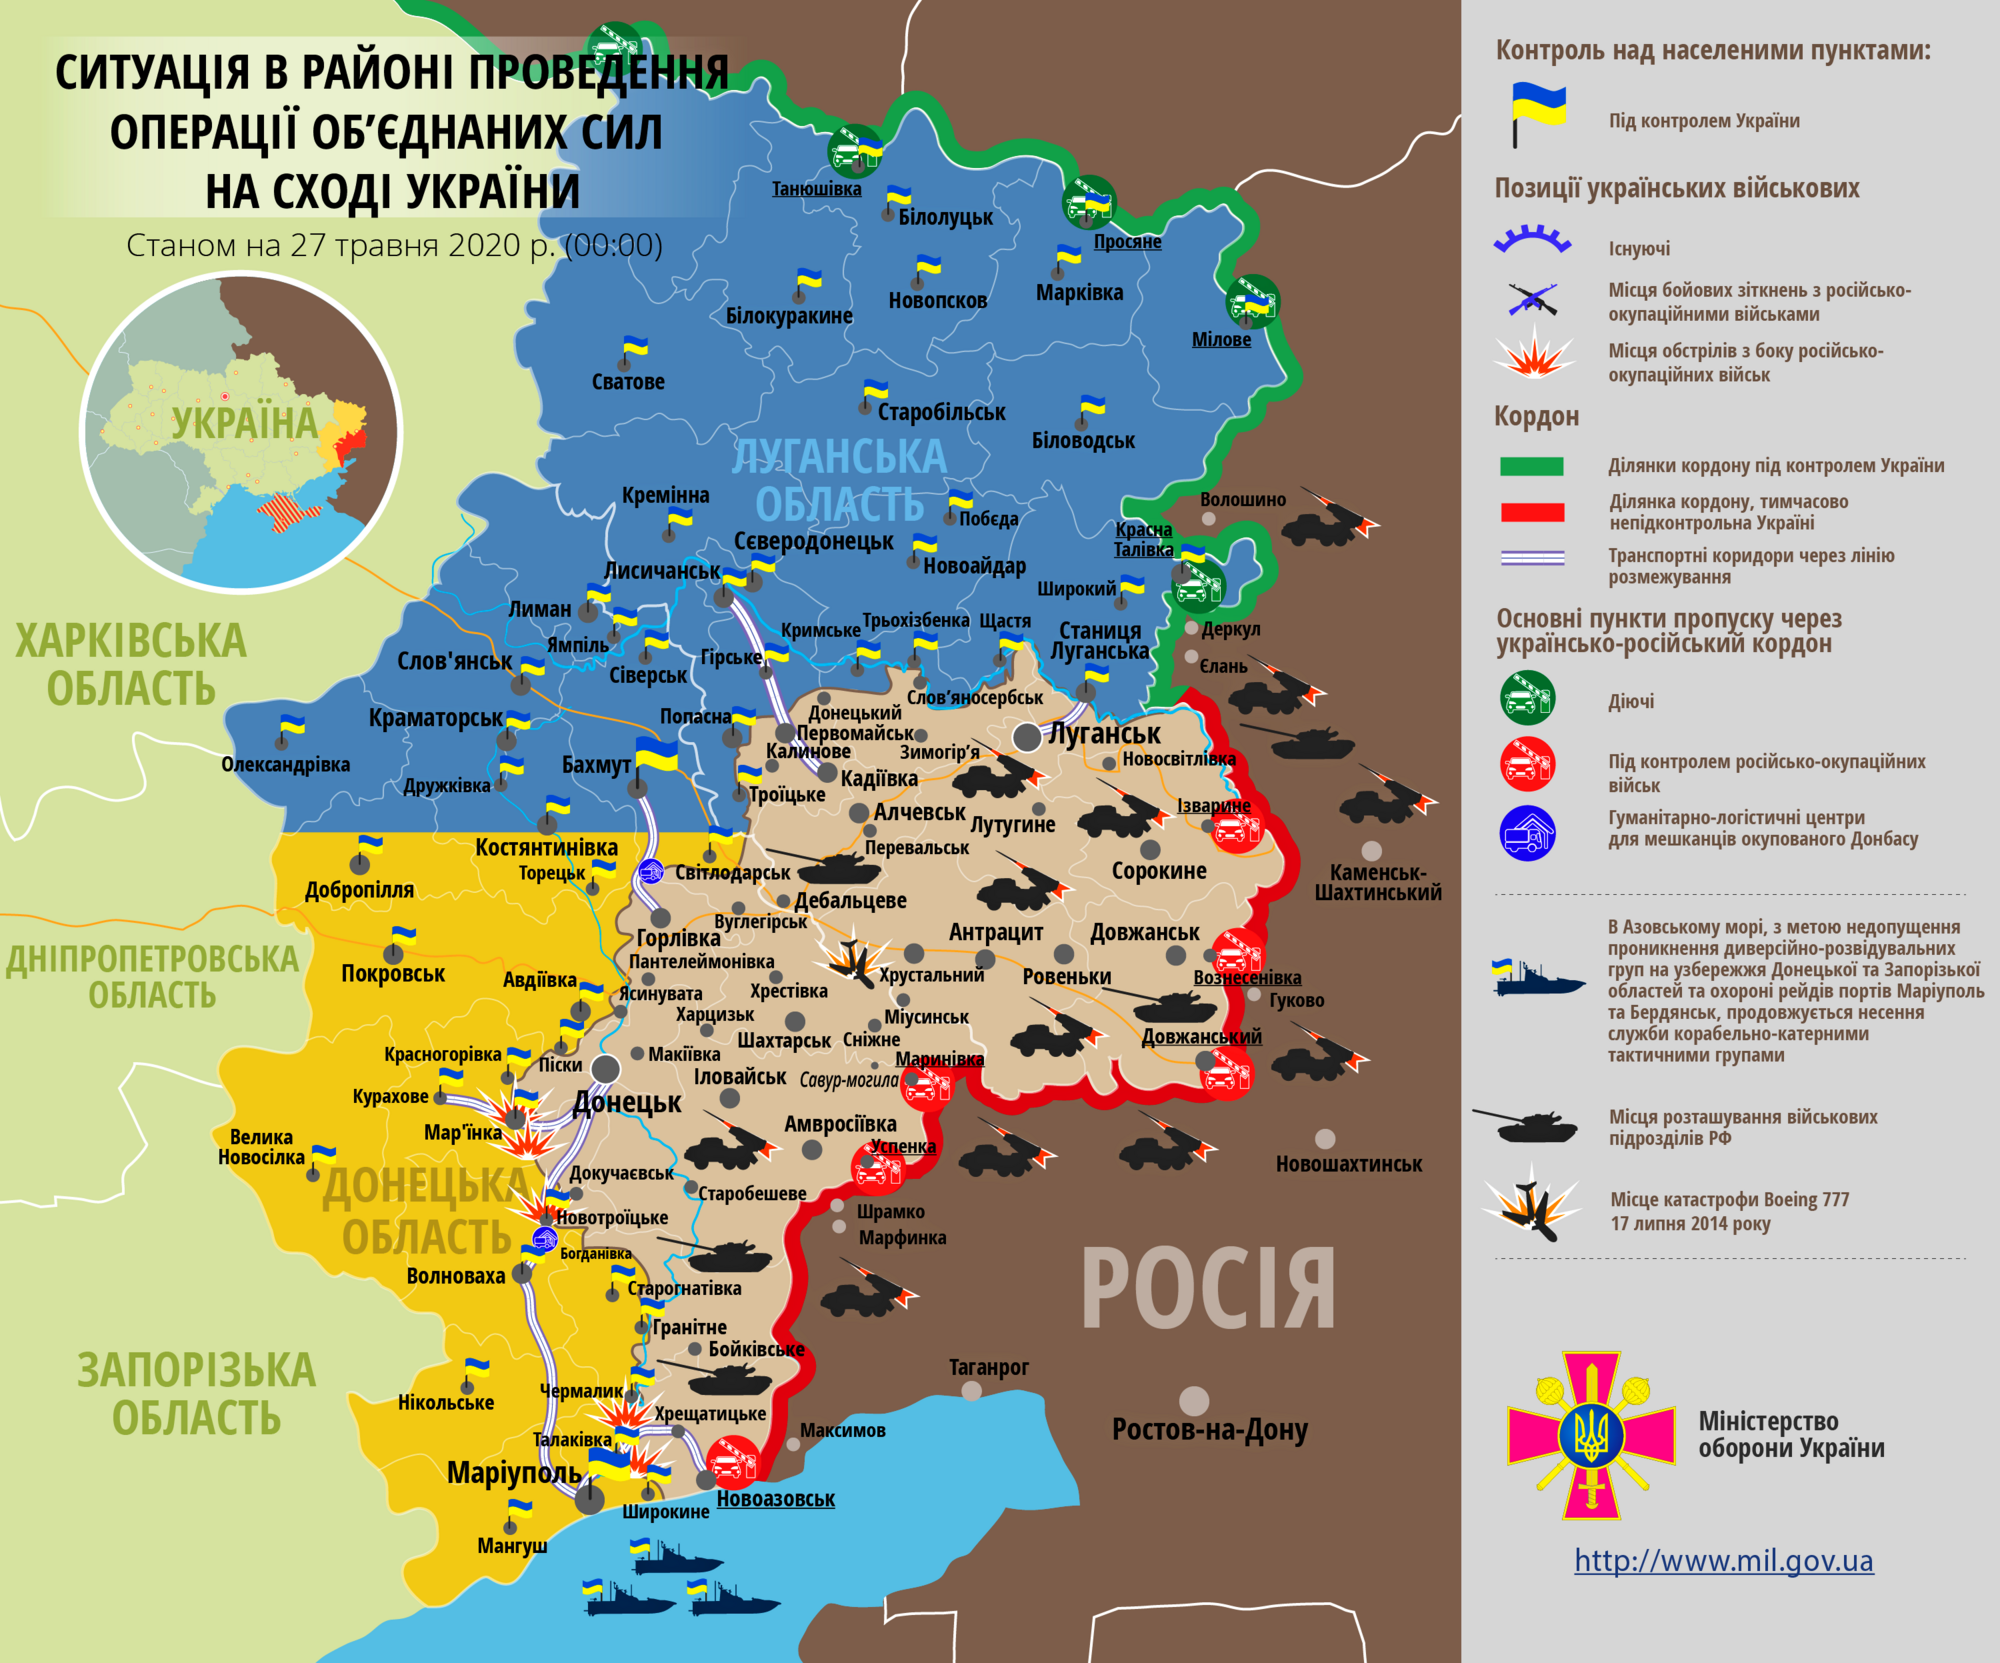 Ситуация в зоне проведения ООС на Донбассе 27 мая